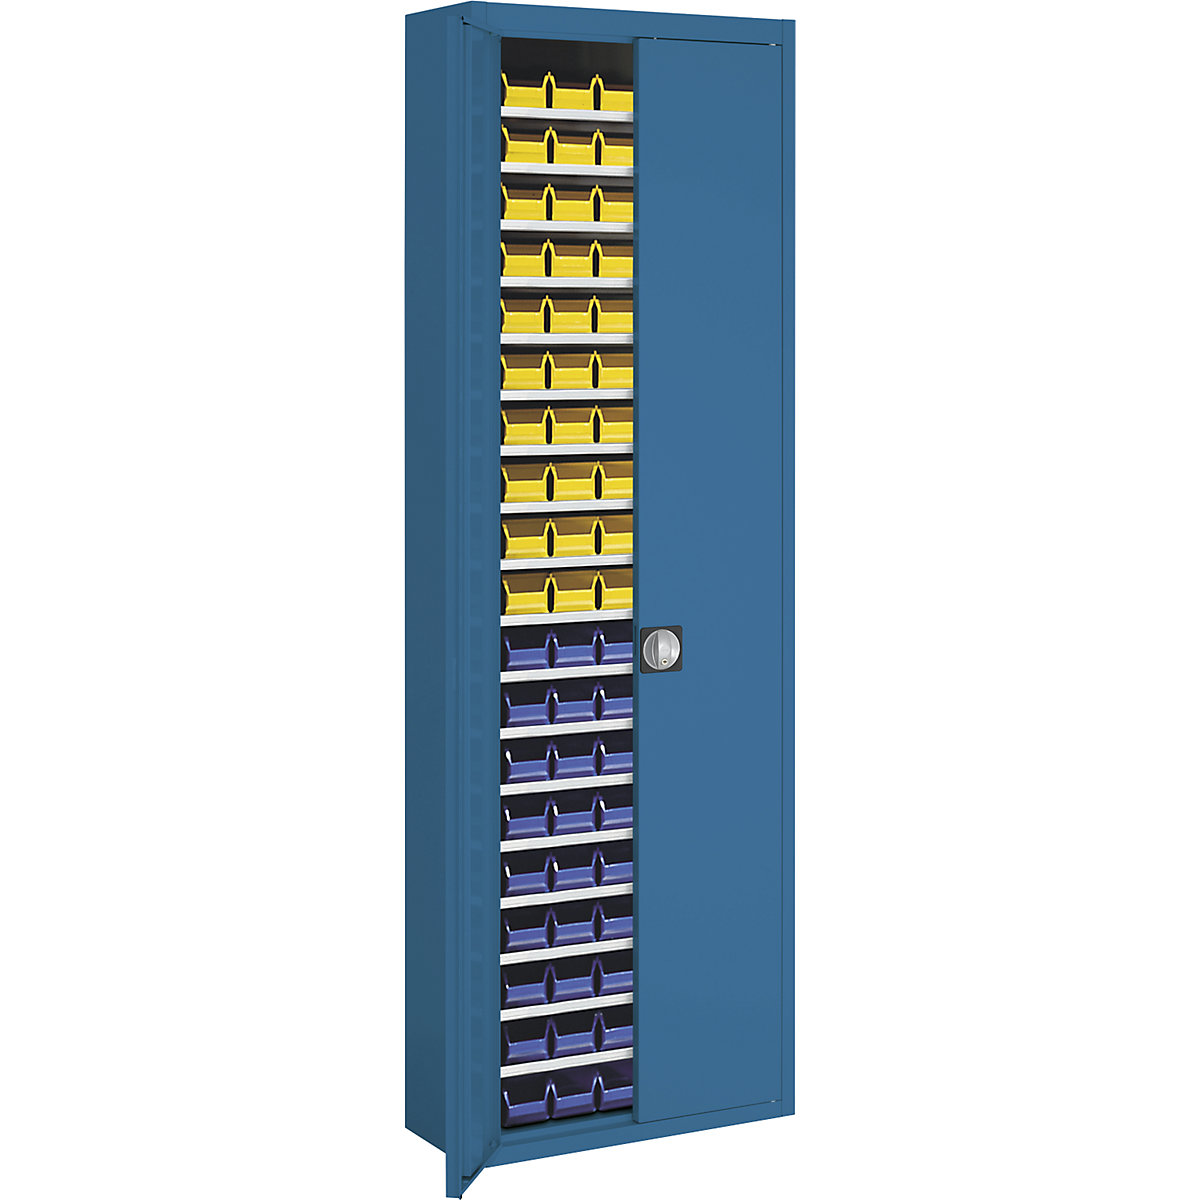 Armário de armazém com caixas de armazenagem à vista – mauser, AxLxP 2150 x 680 x 280 mm, unicolor, azul, 114 caixas-11